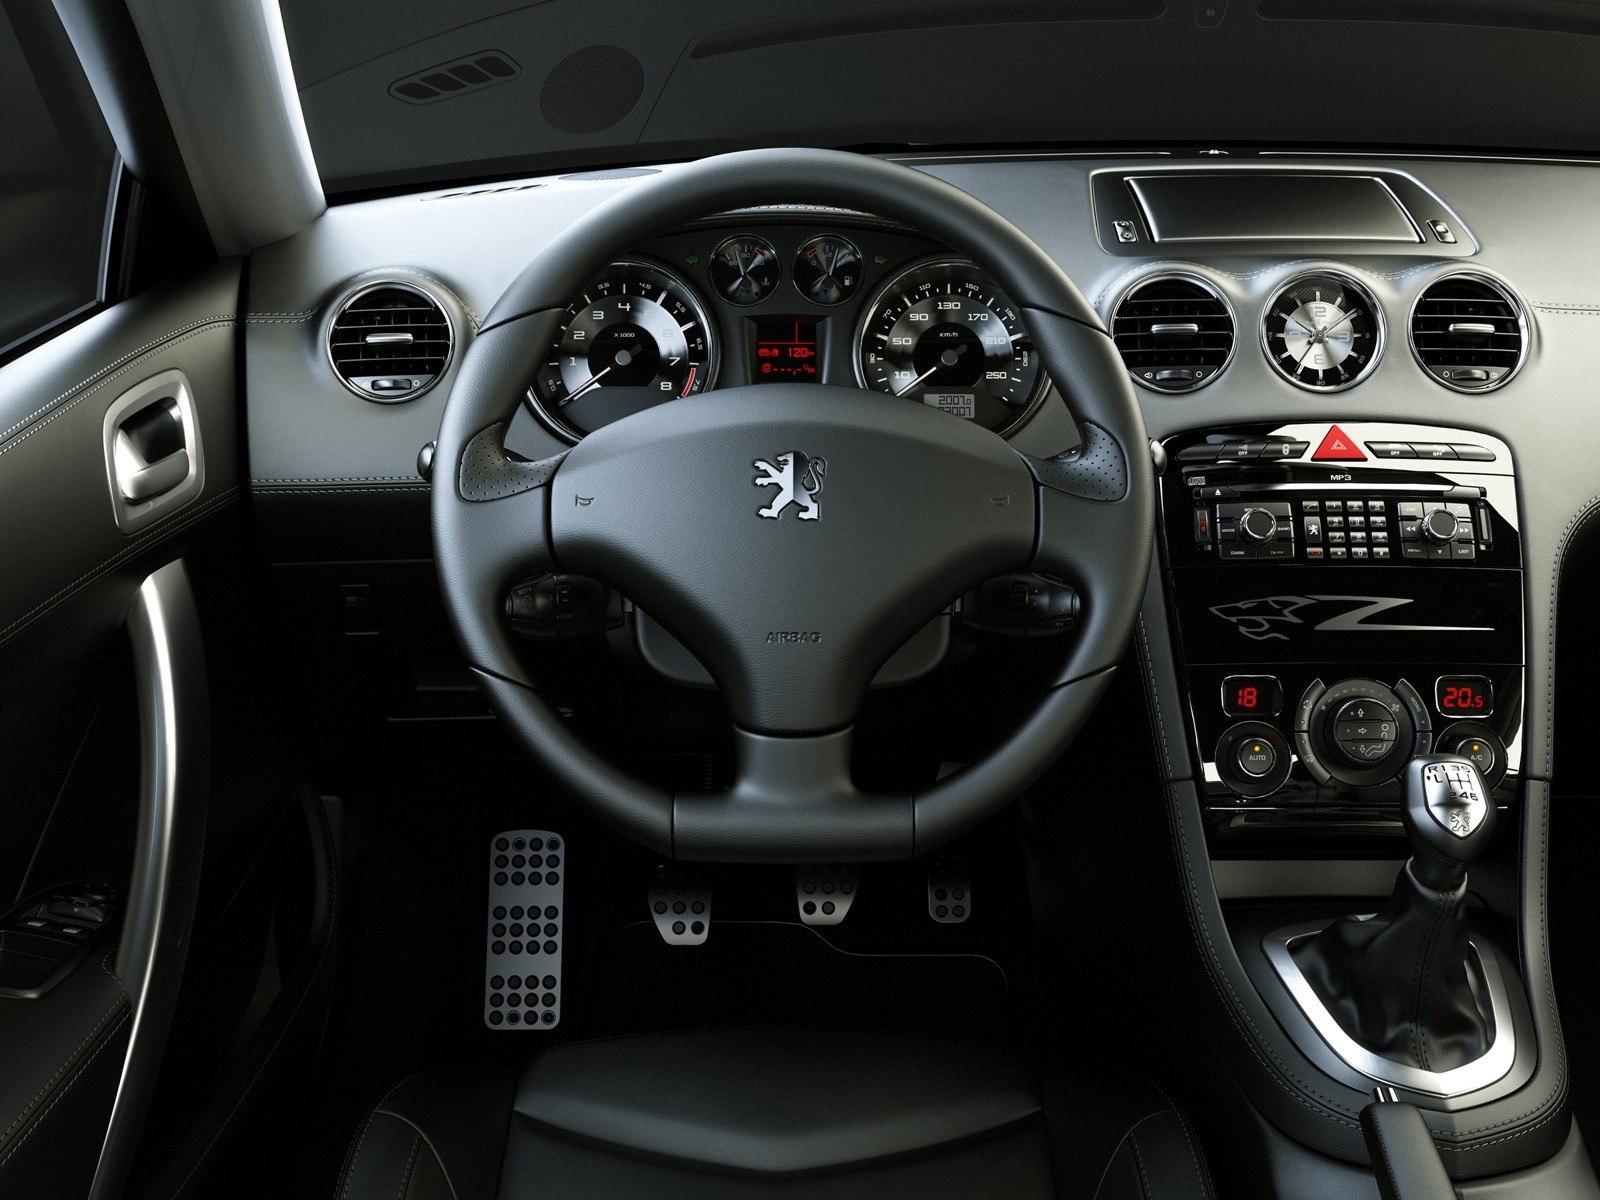 1024 768 - Peugeot 308 Rcz Interior , HD Wallpaper & Backgrounds